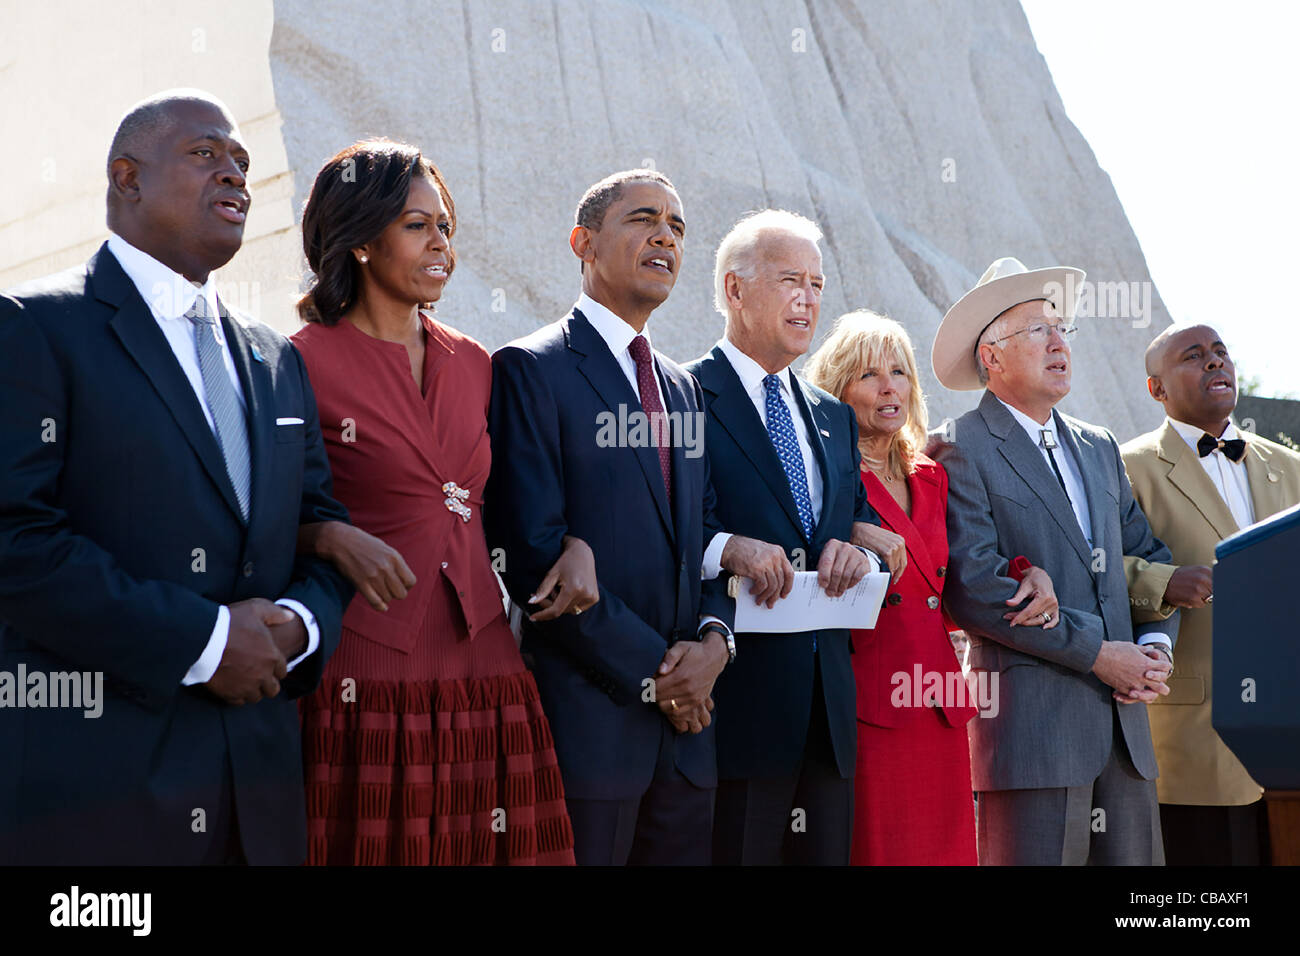 El presidente Barack Obama, la Primera Dama Michelle Obama, el vicepresidente Joe Biden y la Dra. Jill Biden los brazos y cantar "Venceremos" durante la ceremonia para el Día de Martin Luther King Jr. Memorial Nacional del 16 de octubre de 2011 en Washington, DC. Unirse a ellos, de izquierda a derecha son: Harry Johnson, Sor; Foto de stock